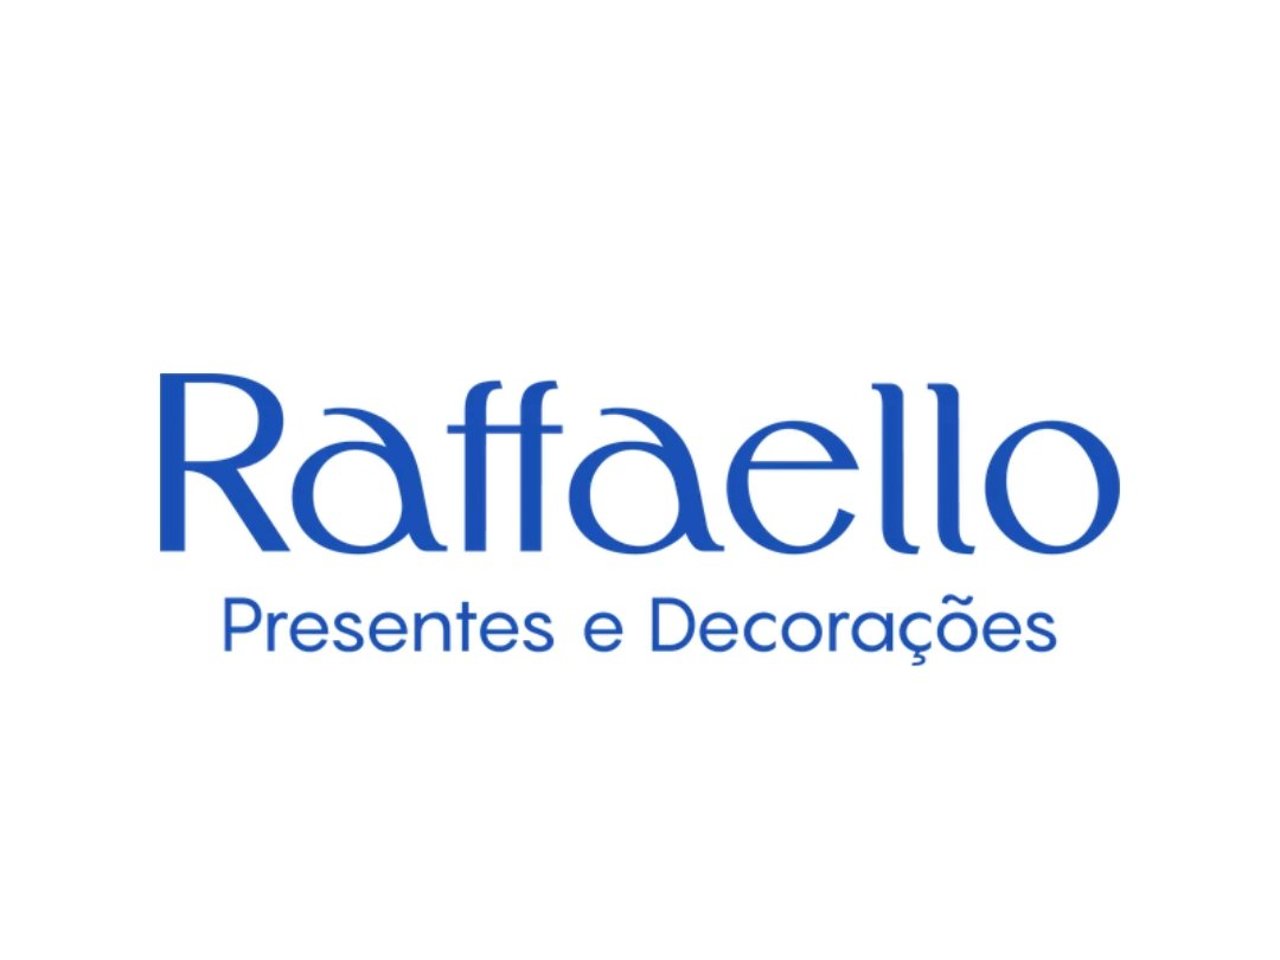 Rafaello Presentes e decorações